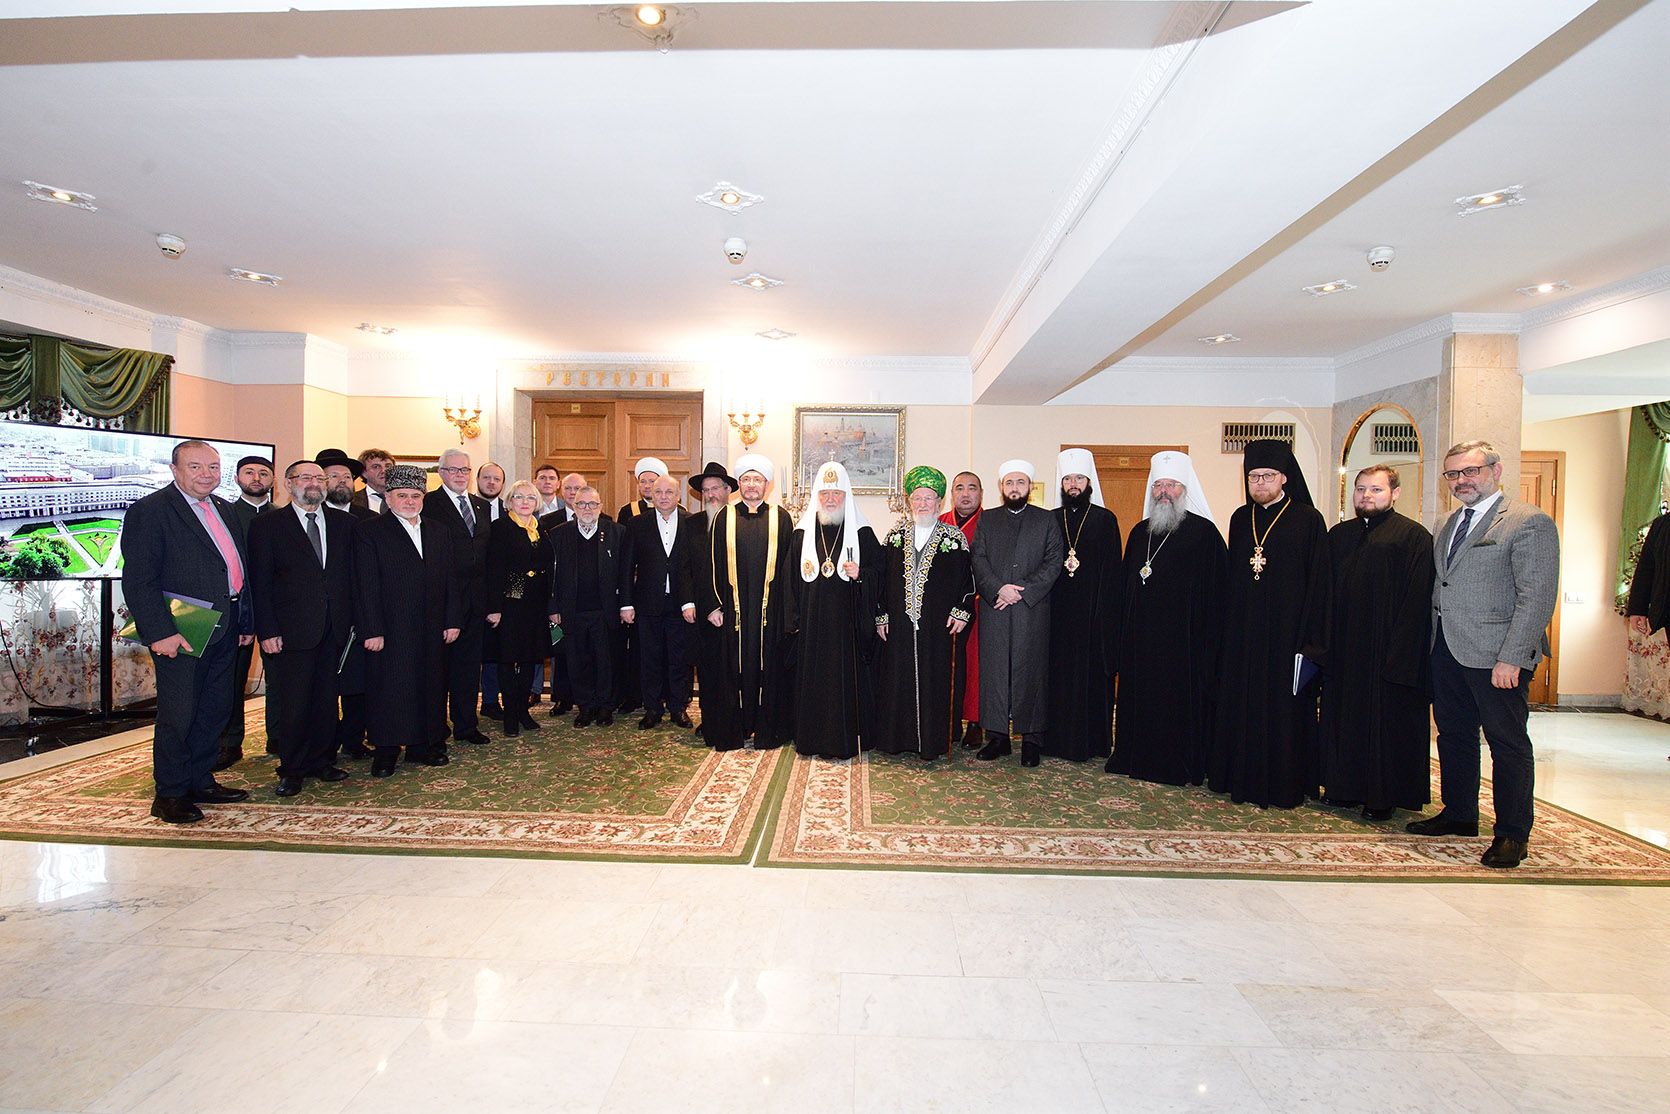 Святейший Патриарх Кирилл возглавил юбилейное заседание Межрелигиозного совета России